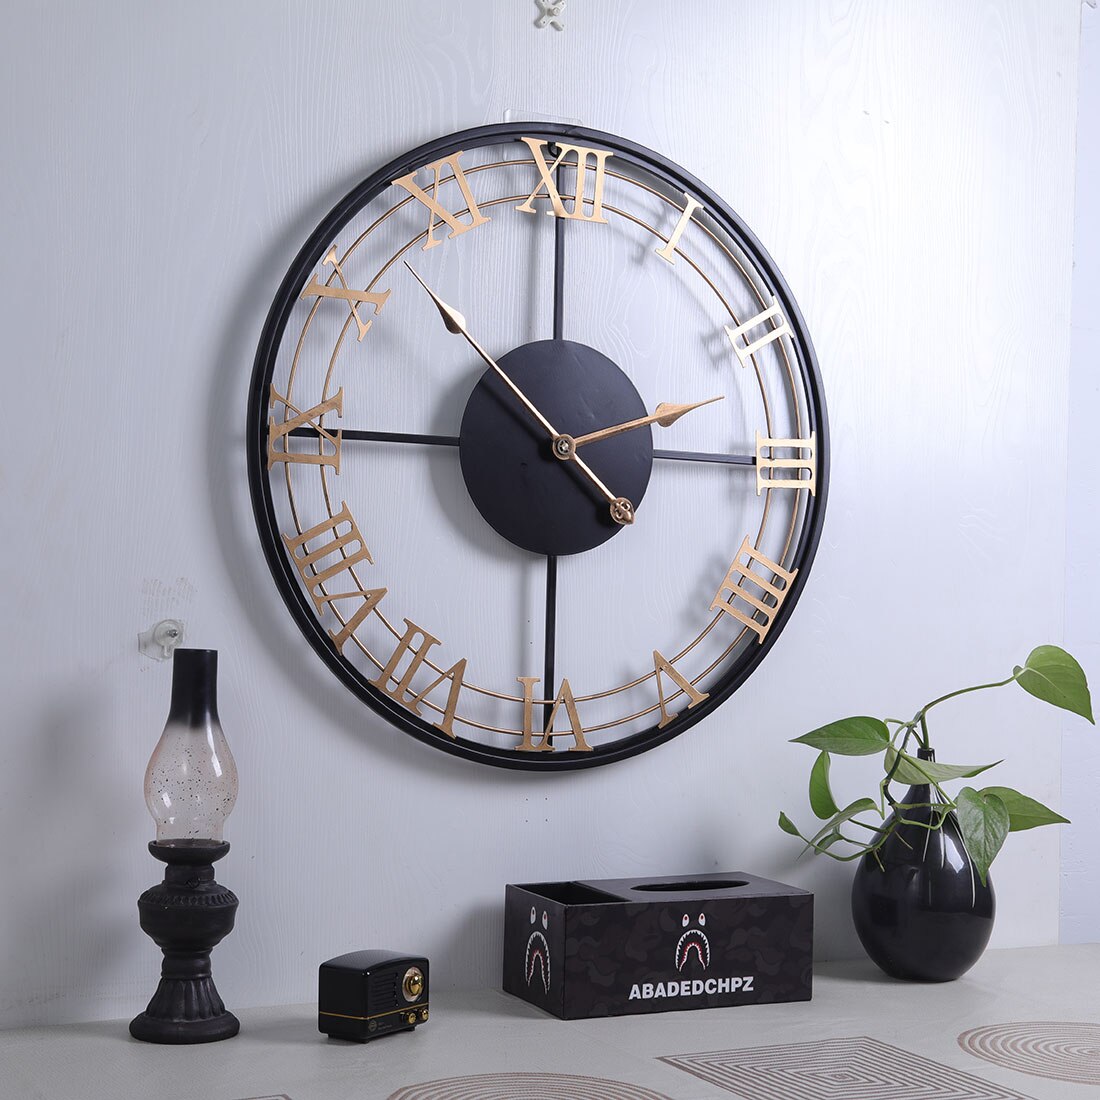 Horloge time horloge romain